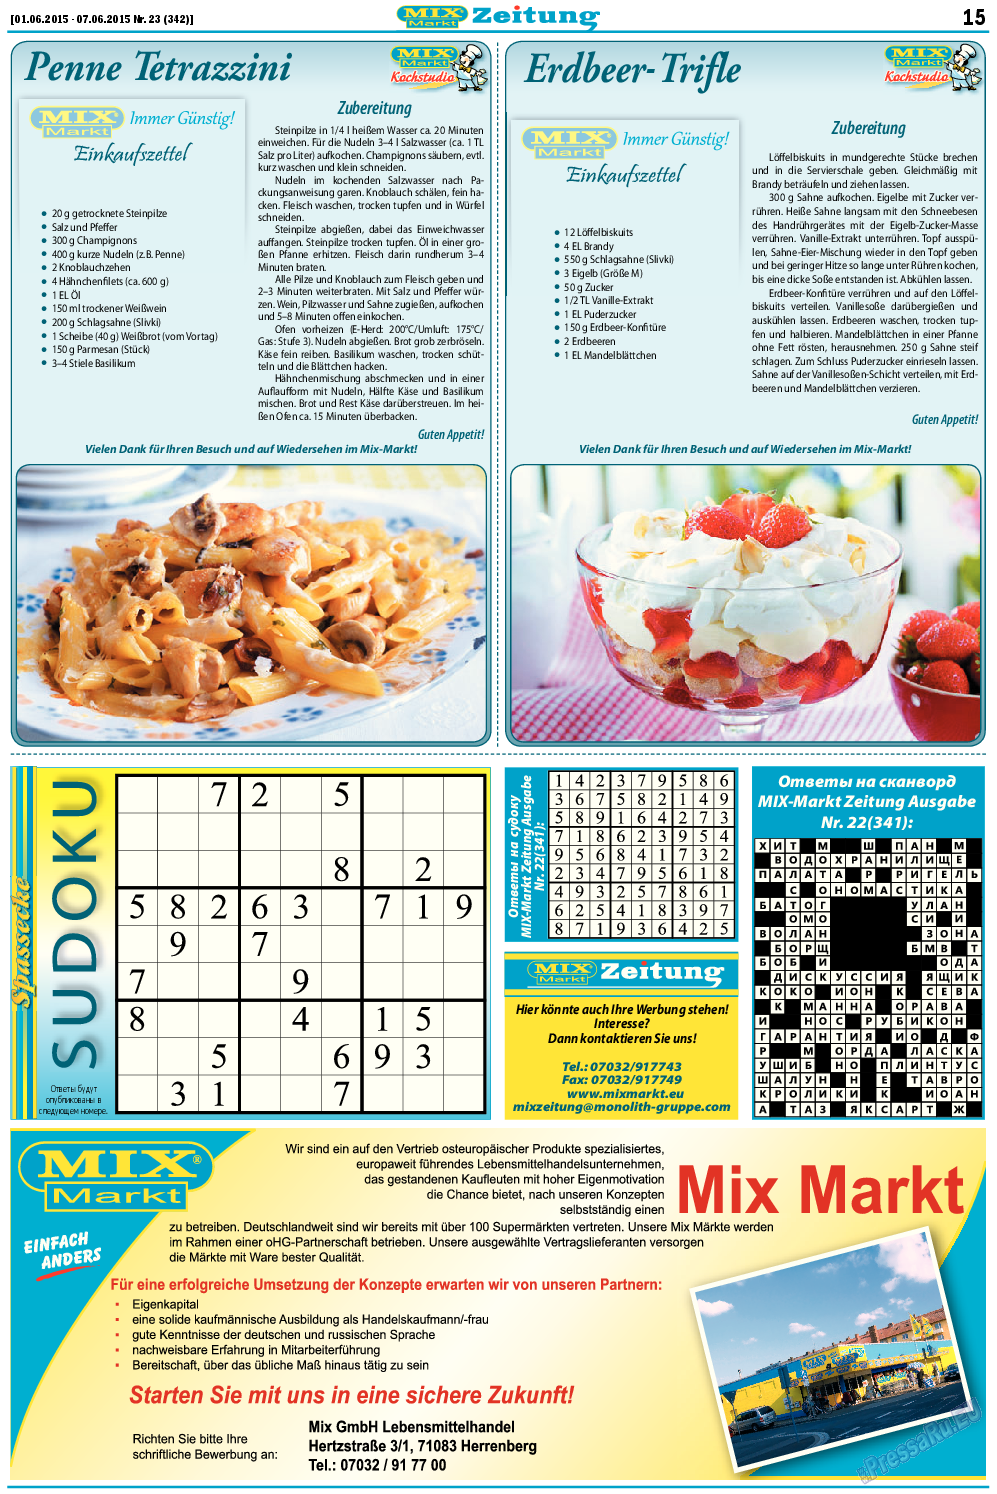 MIX-Markt Zeitung, газета. 2015 №23 стр.15